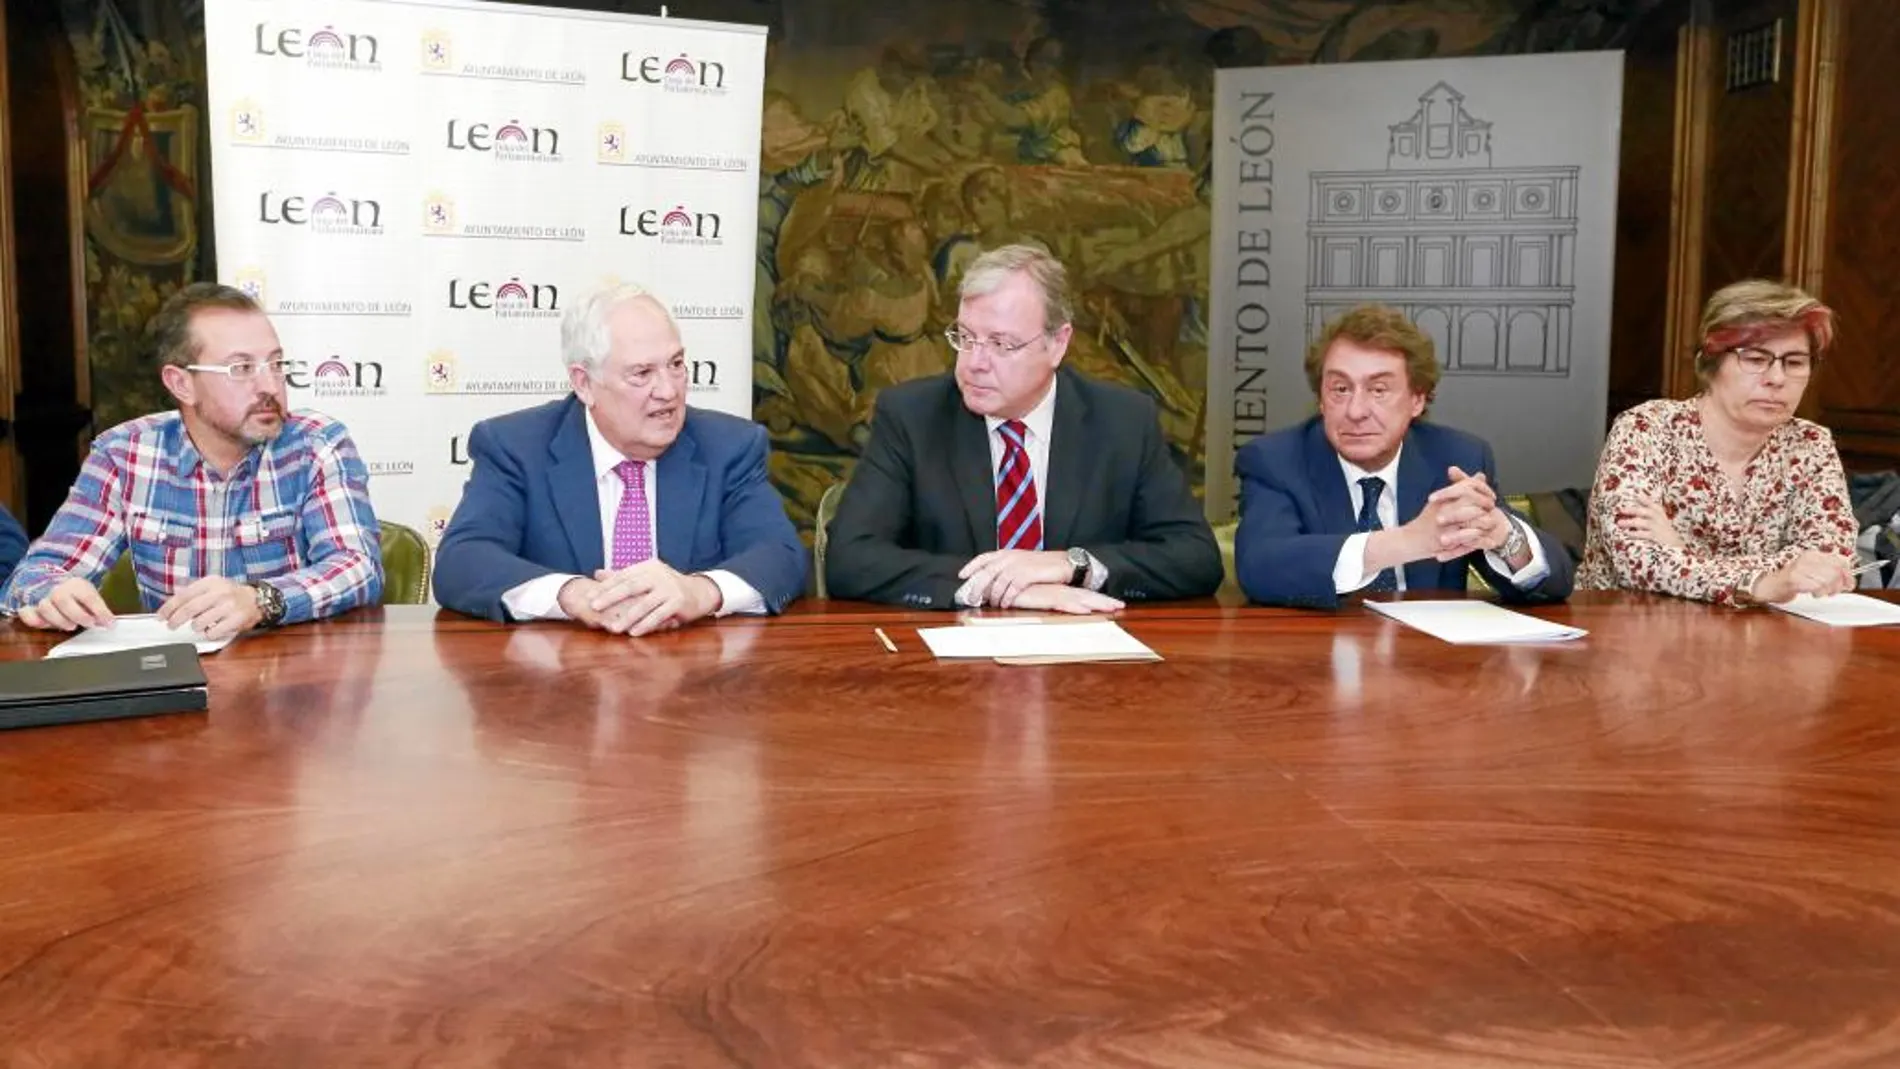 Antonio Silván preside el encuentro con los directores de distintos centros educativos de León